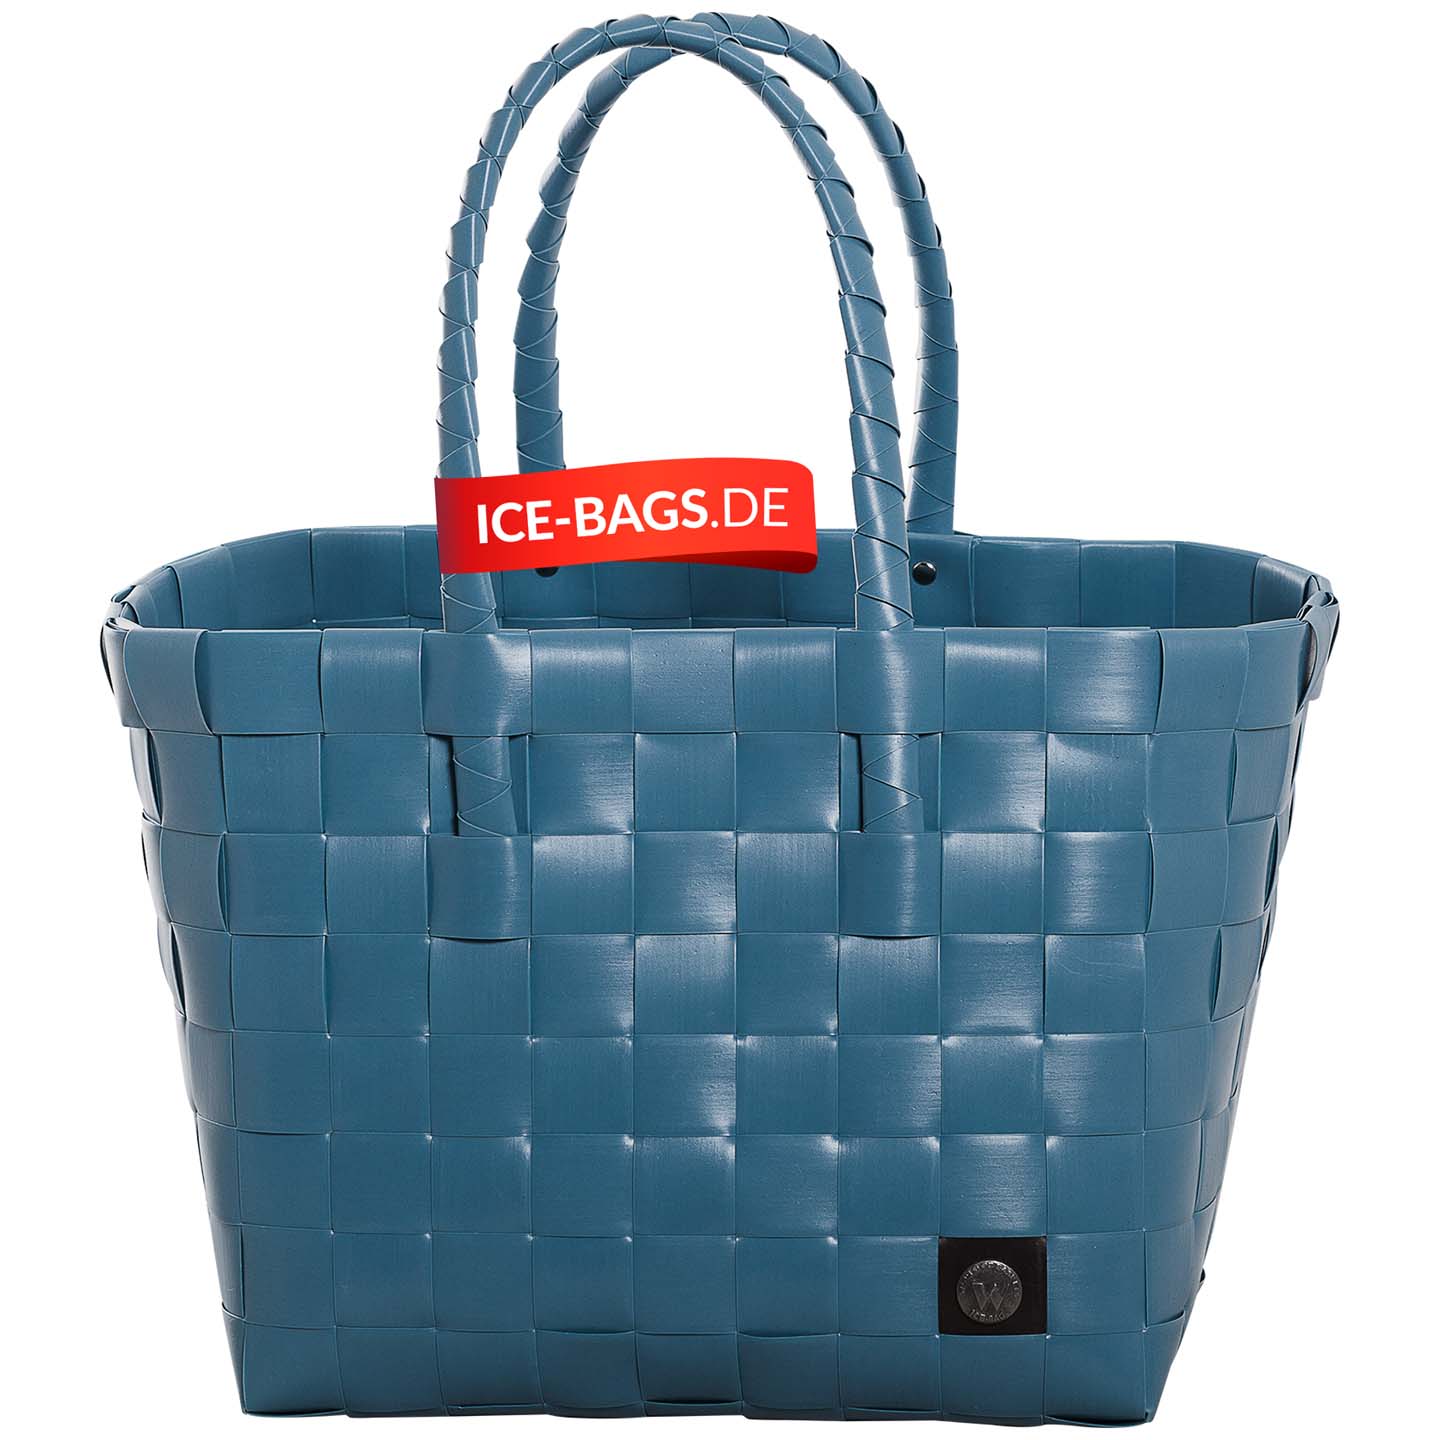 ICE BAG 5010 89 Tasche blau silber anthrazit taupe rose Einkaufskorb Witzga